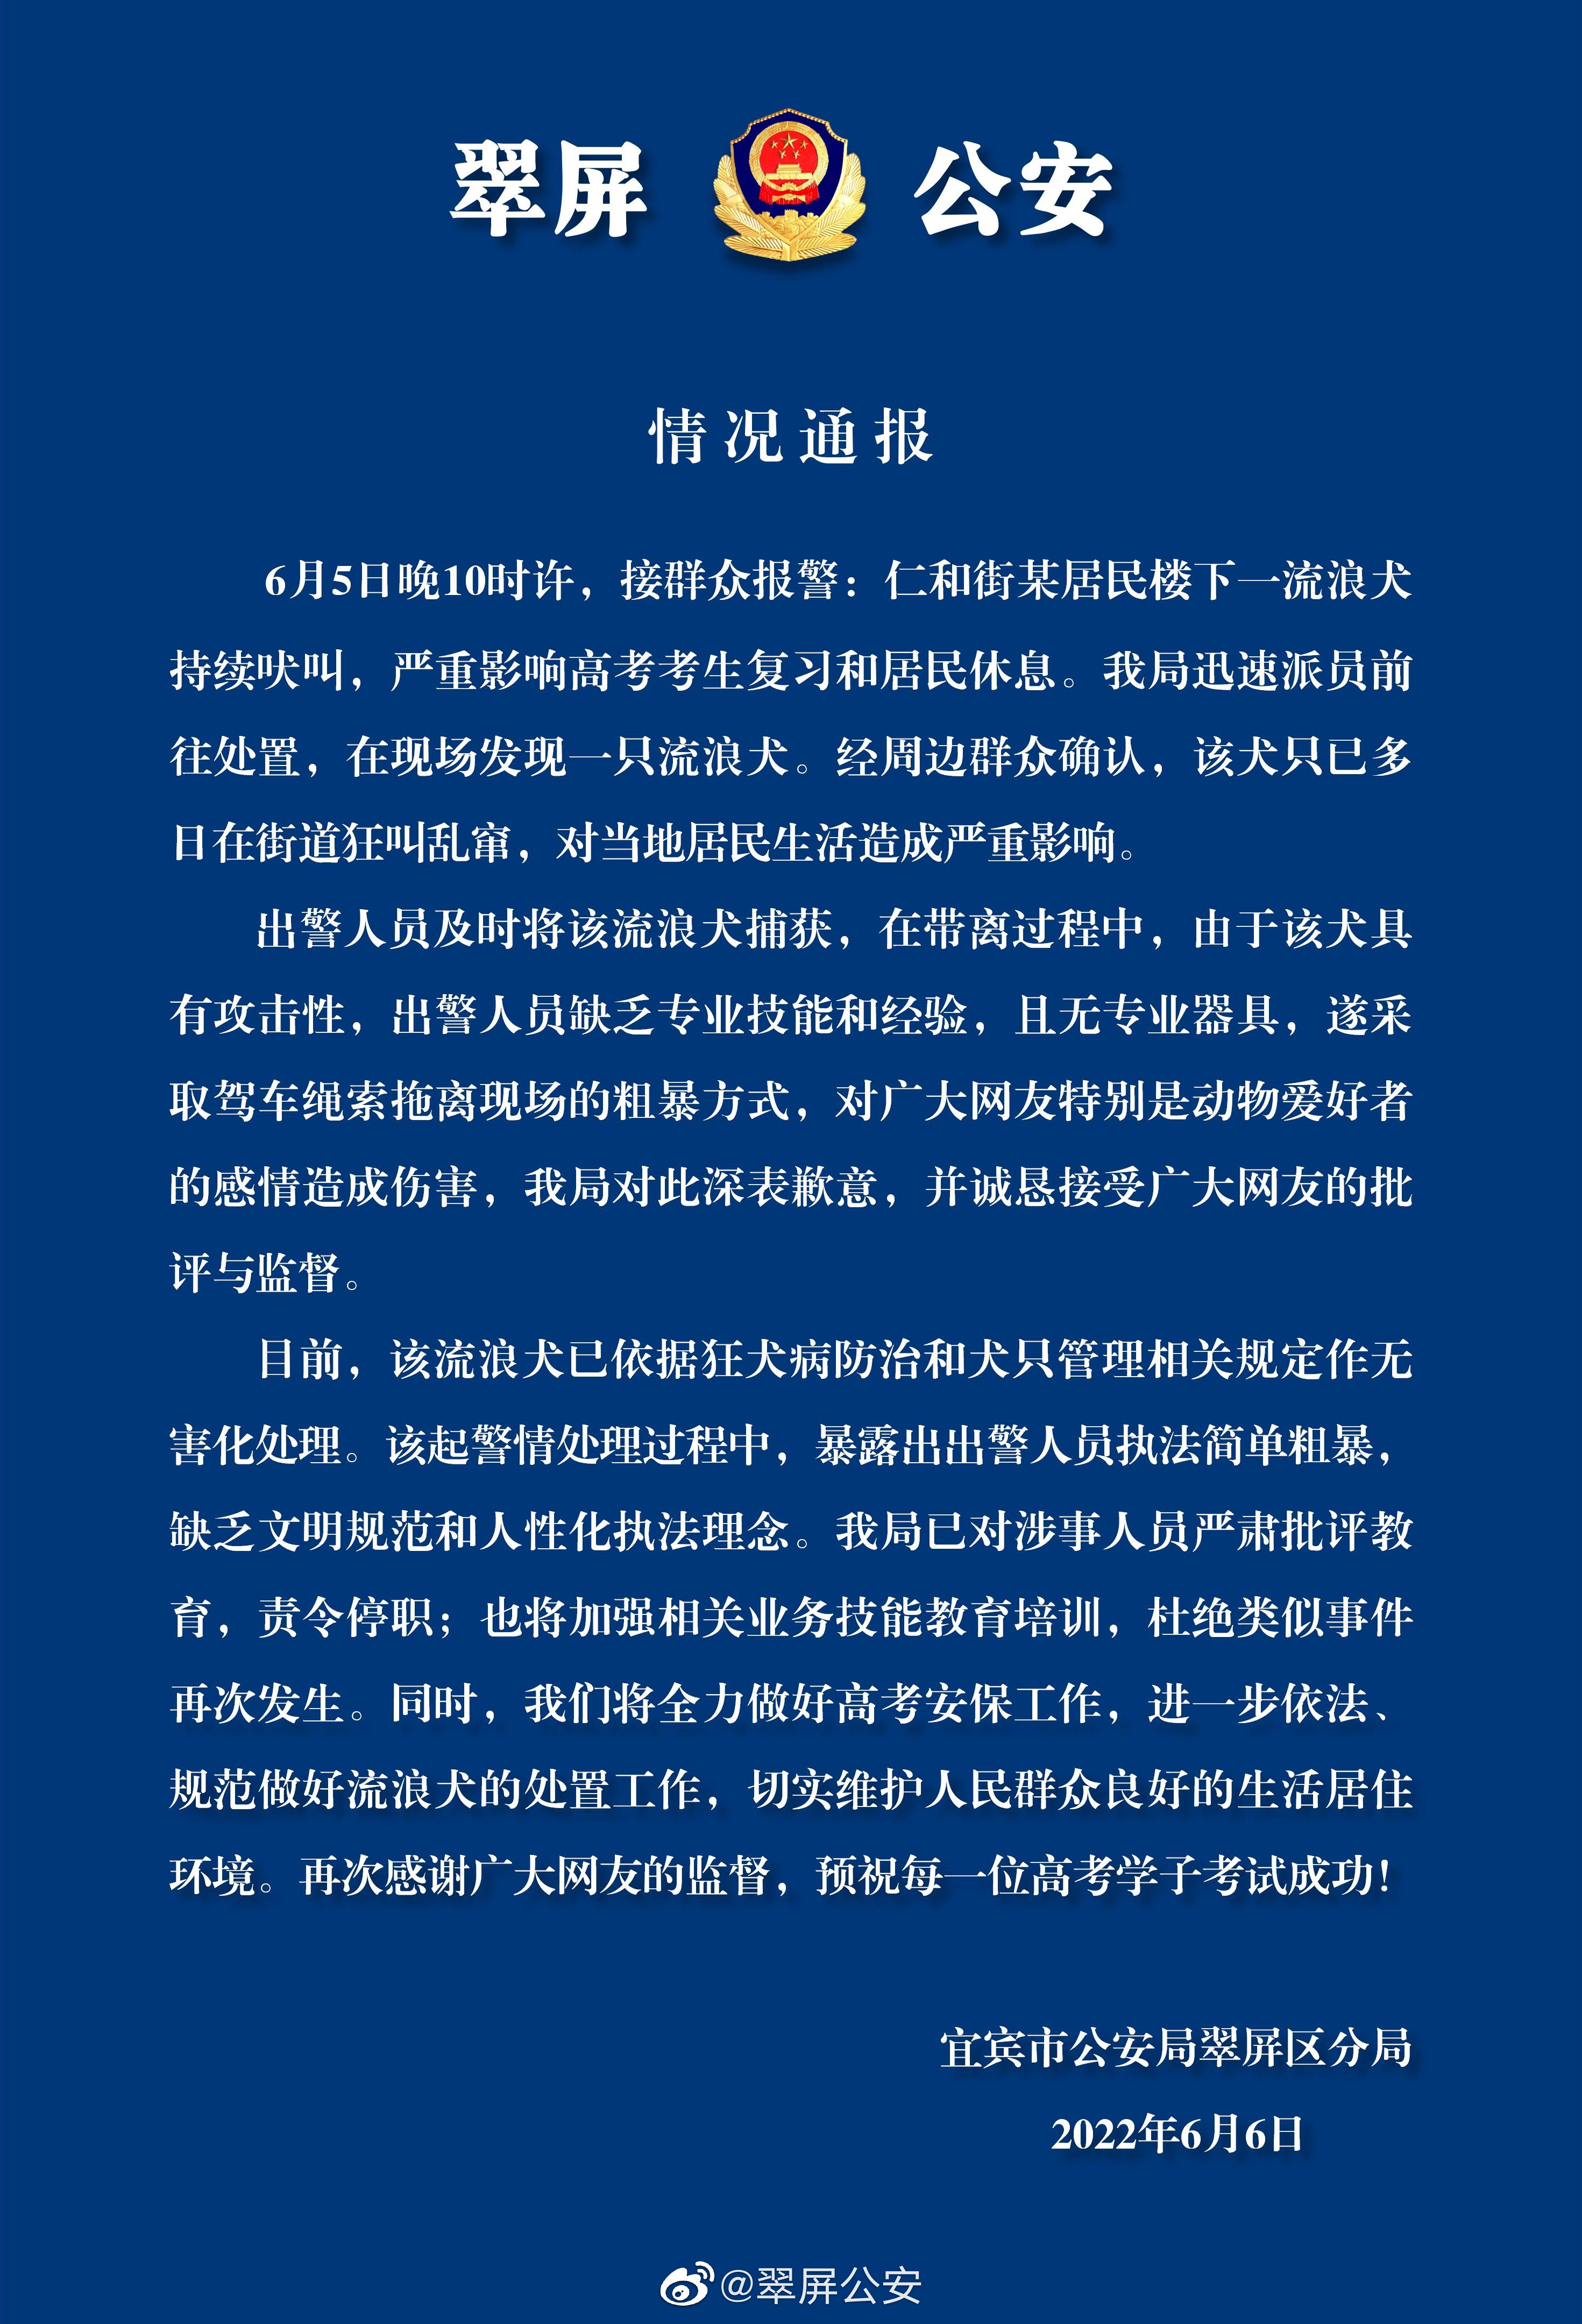 居然之家：深表遗憾 向任达华先生致以诚挚的歉意-公司要闻-公司报道-中国网地产